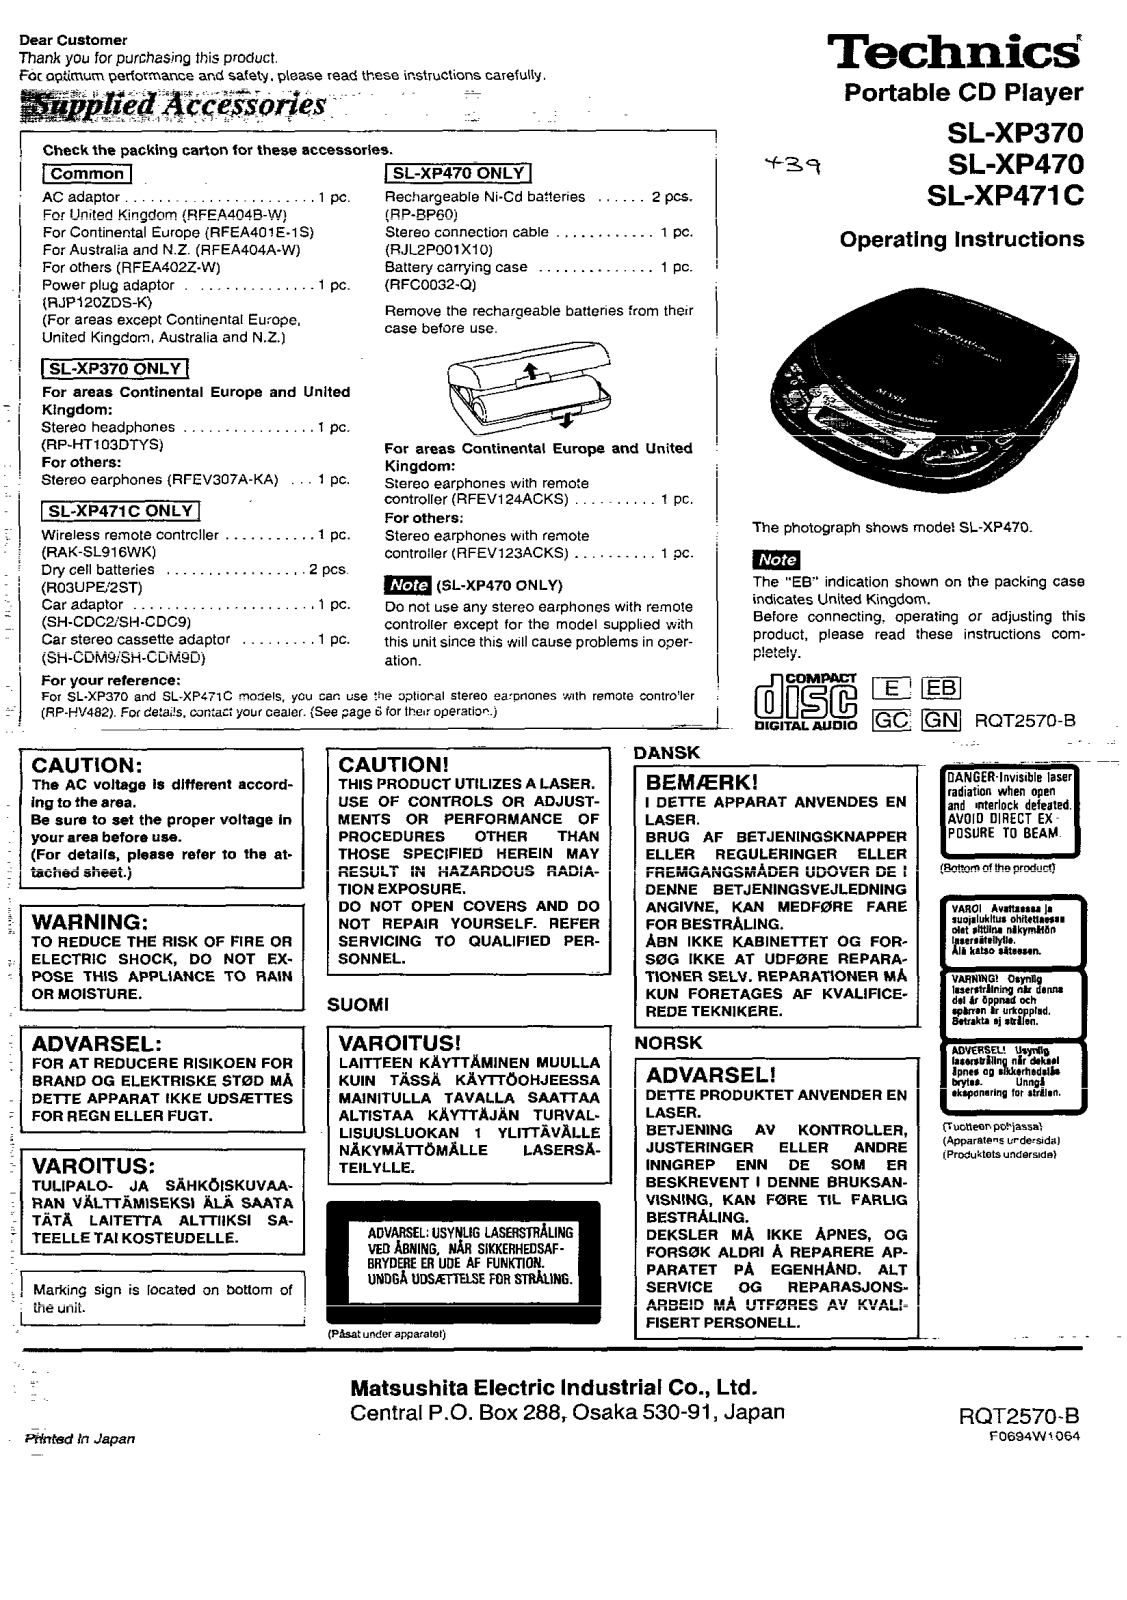 Panasonic SL-XP370, SL-XP471C, SL-XP470 User Manual